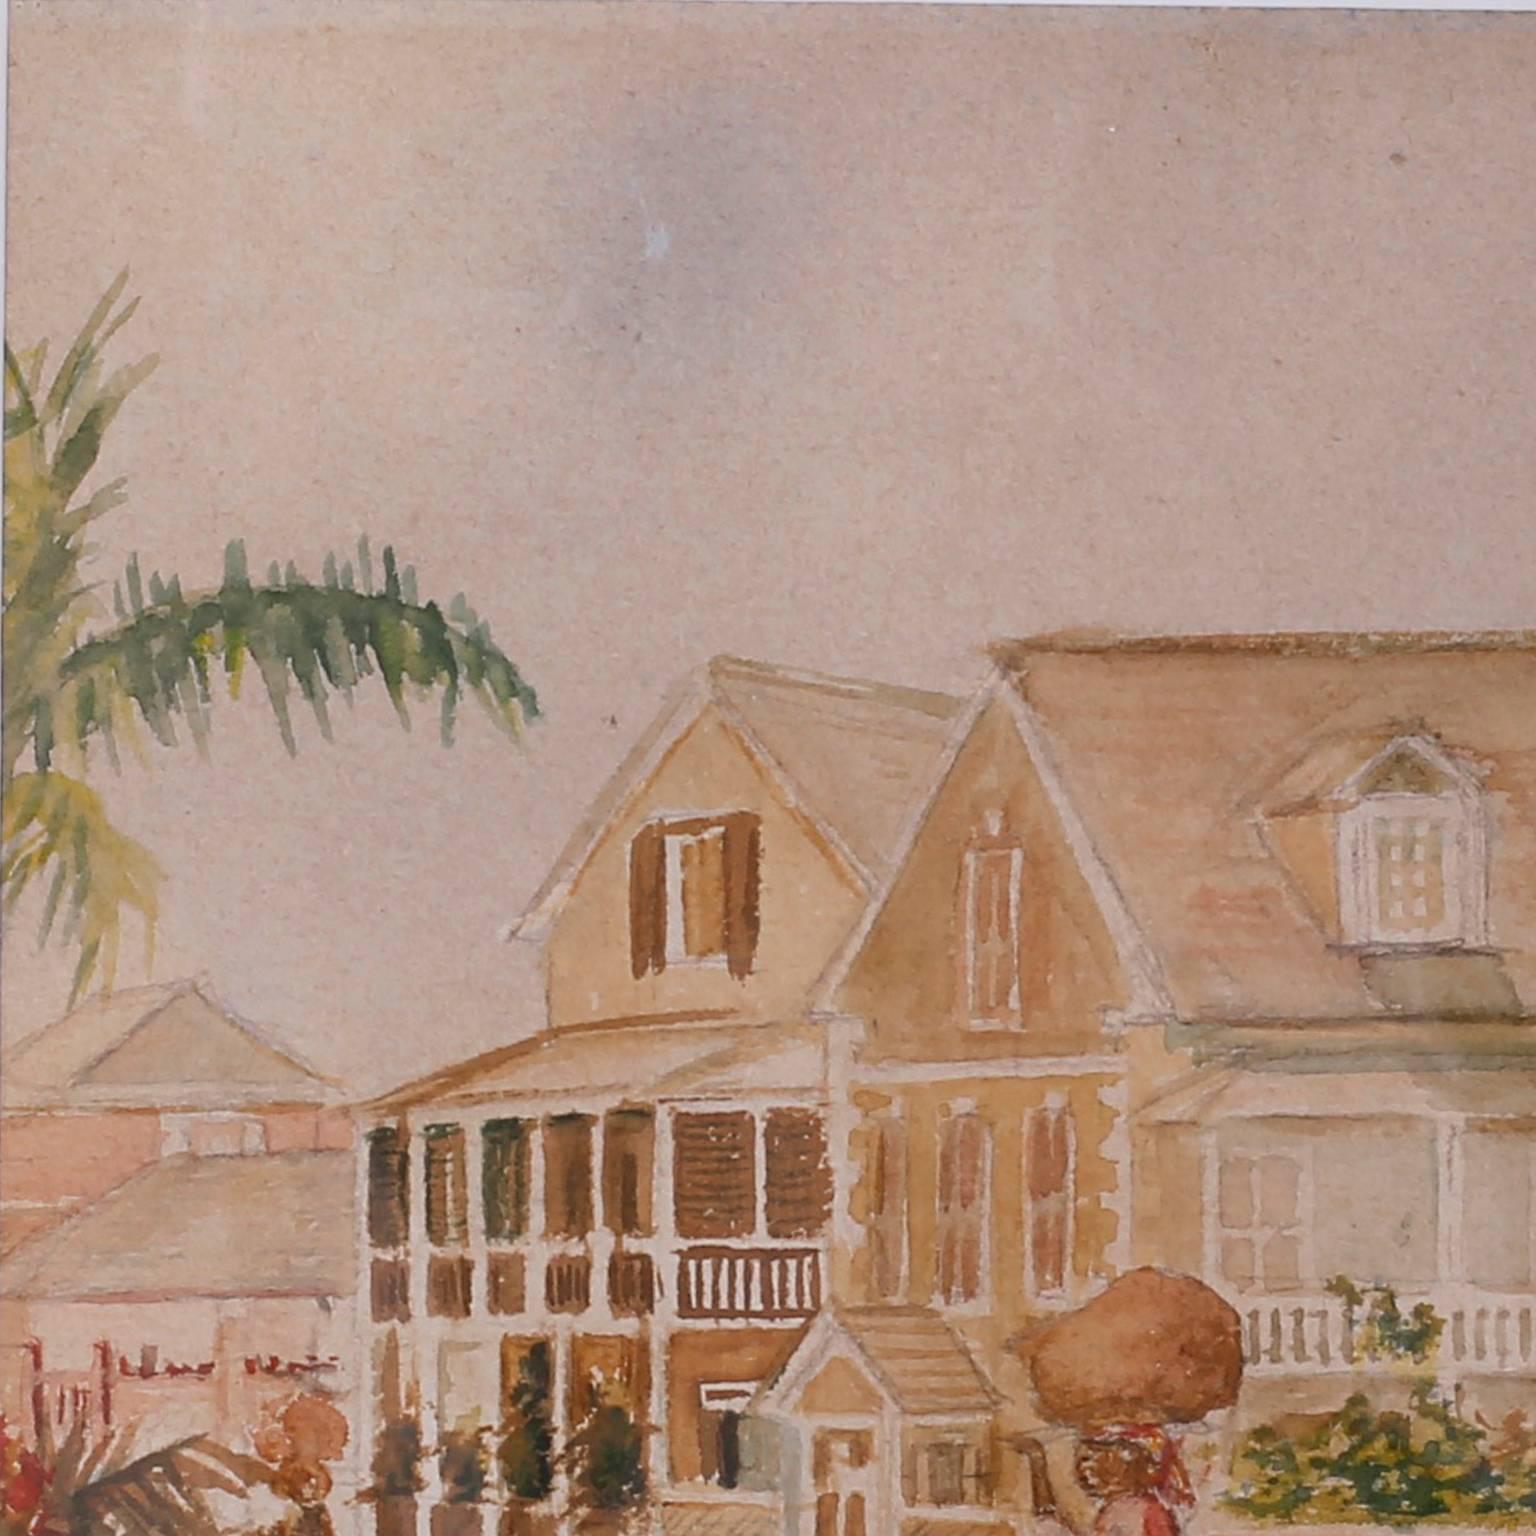 aquarelle des Antilles tropicales sur papier, datant du 19e siècle, représentant un moment de la vie quotidienne
temps dans une rue tranquille avec des maisons, des palmiers, des fleurs et un
femme portant un baluchon sur sa tête. Peut-être les